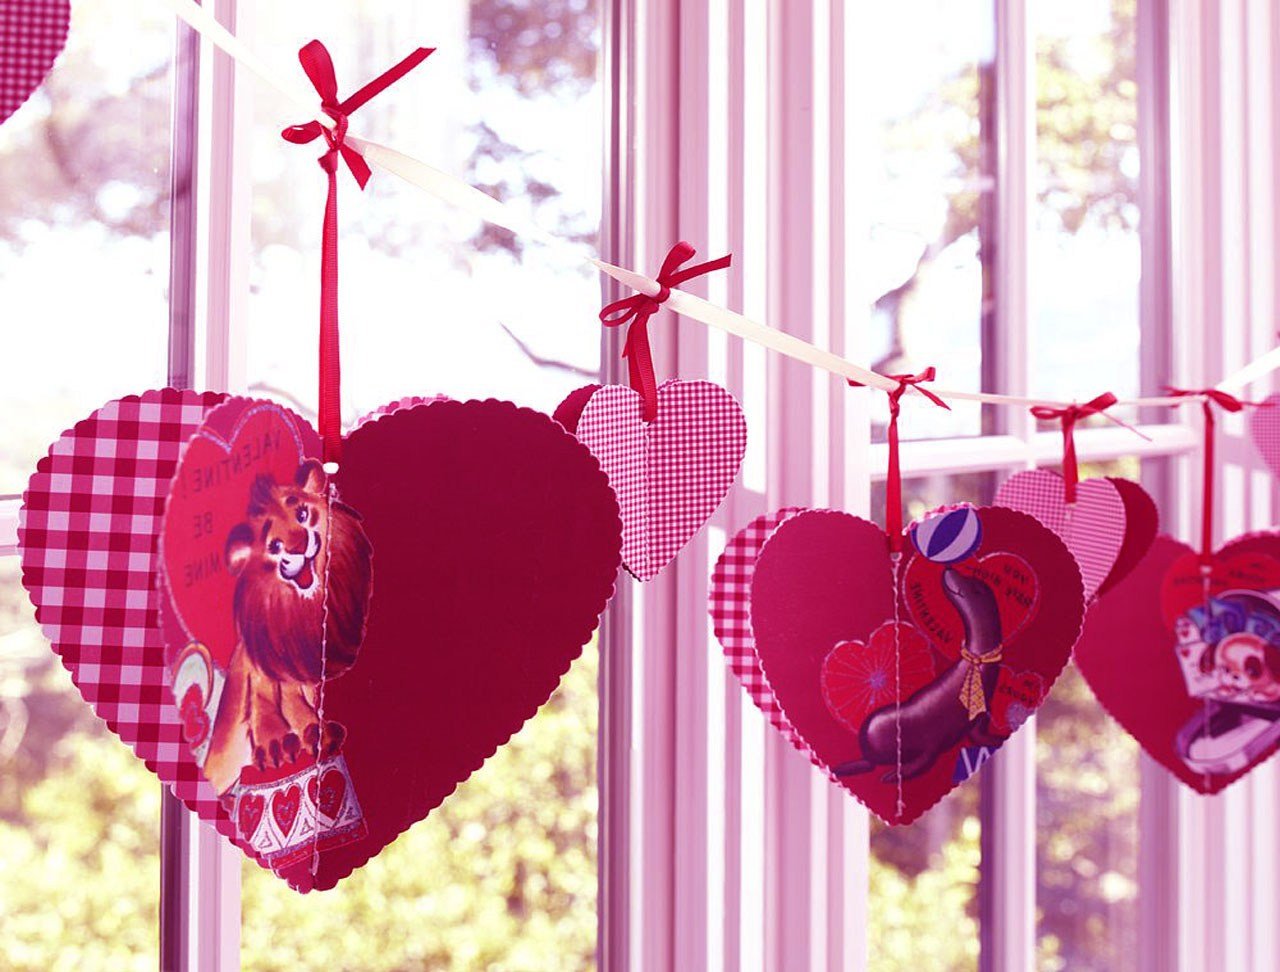 Валентинки на день влюблённых своими руками, 10 оригинальных идей